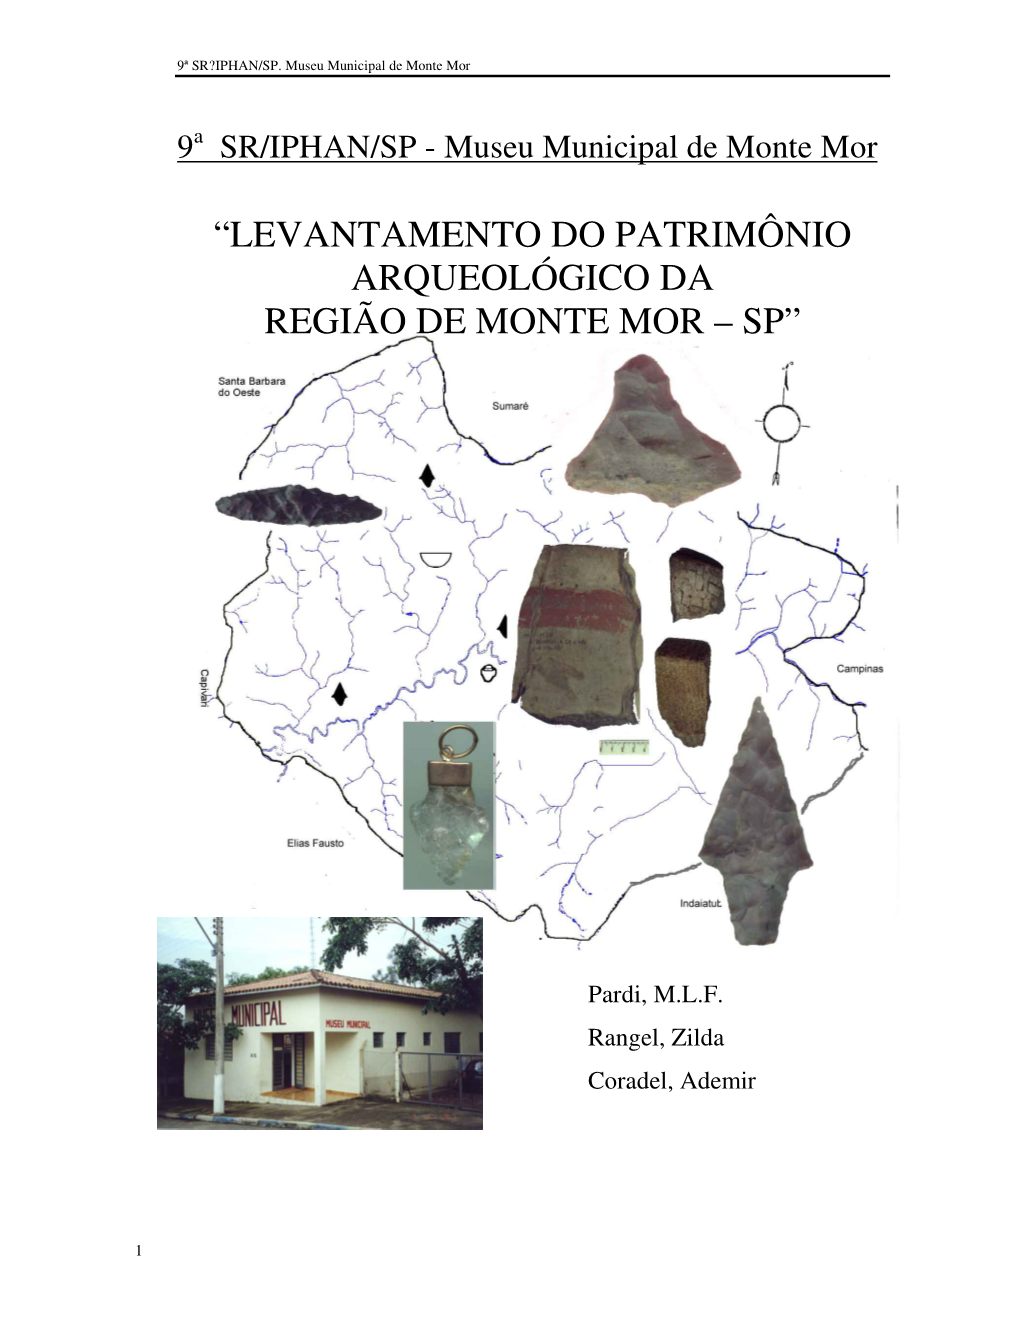 Levantamento Do Patrimônio Arqueológico Da Região De Monte Mor – Sp”